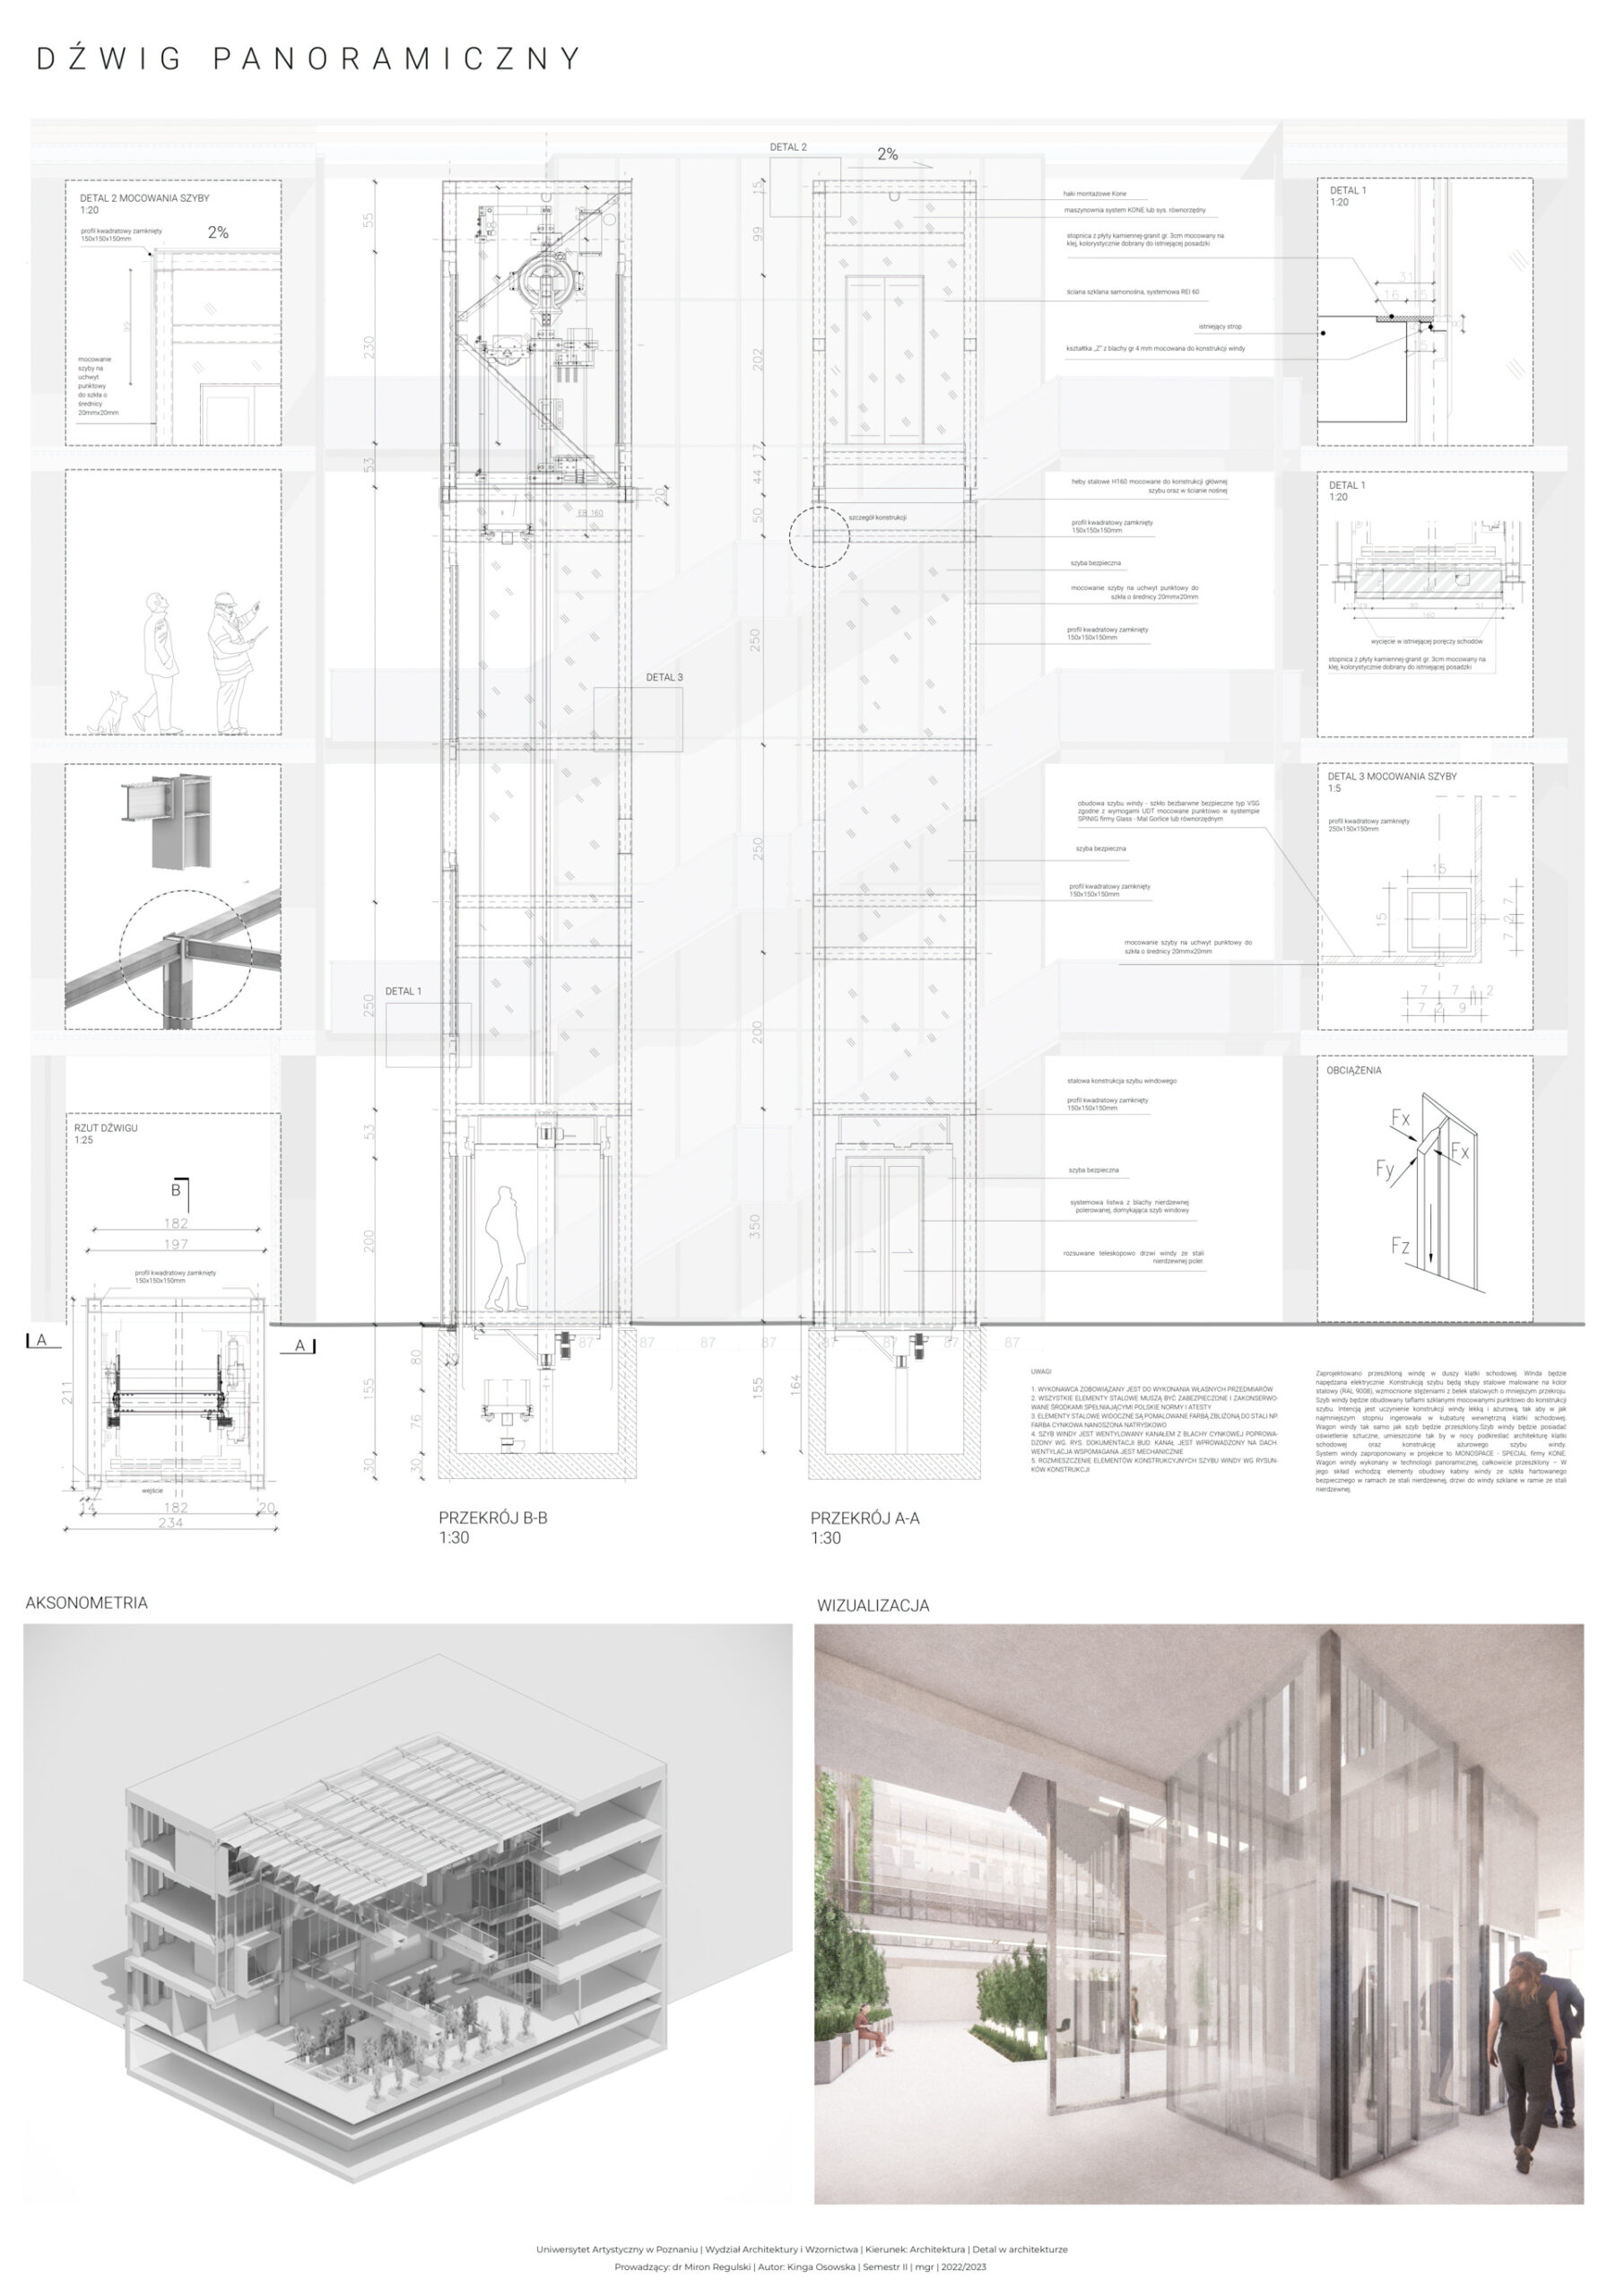 Dolna lewa część: wizualizacja aksonometryczna - przekrój budynku w miejscu patio.Dolna prawa część: wizualizacja projektowanego detalu w przestrzeni patio.Górna część:rysunki techniczne, schematy, opisy wyrobów budowlanych oraz rozwiązań technicznych.